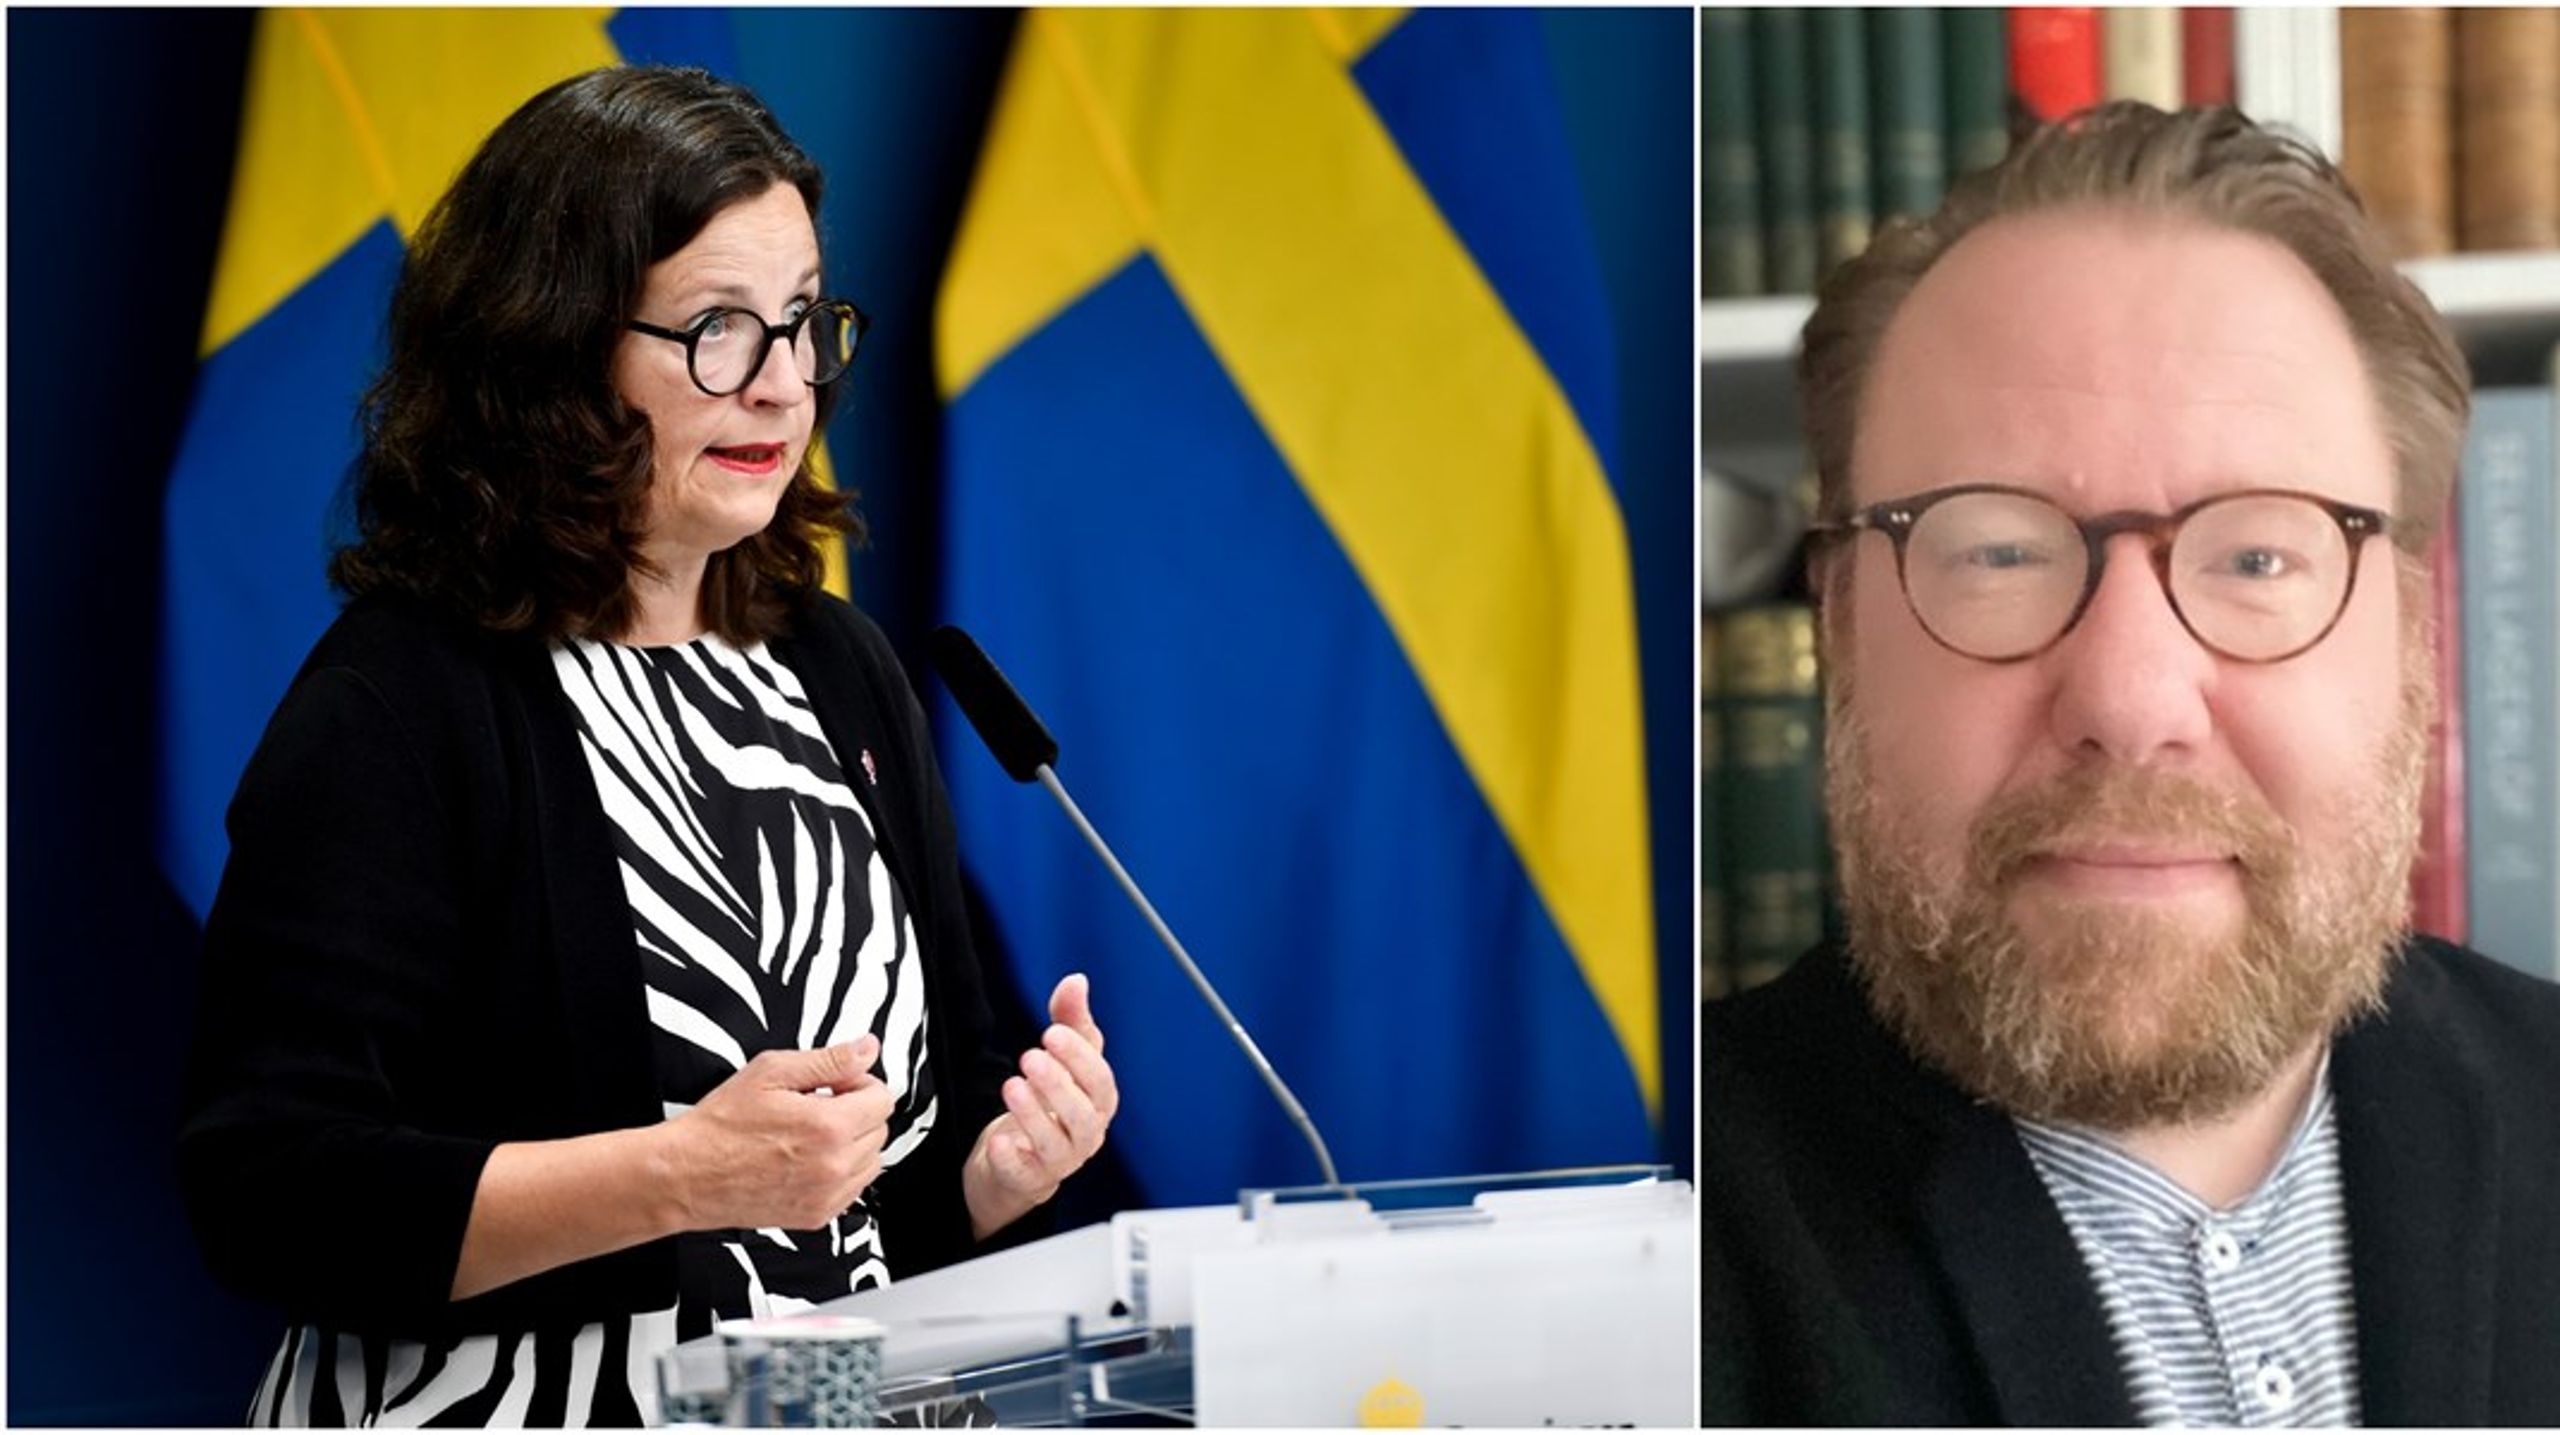 Utbildningsminister Anna Ekström (S) öppnade i förra månaden för sänkta trösklar till gymnasiet med exempelvis förändring i kunskapskraven gällande det lägsta godkända betyget (E), skriver Ola Mårtensson.